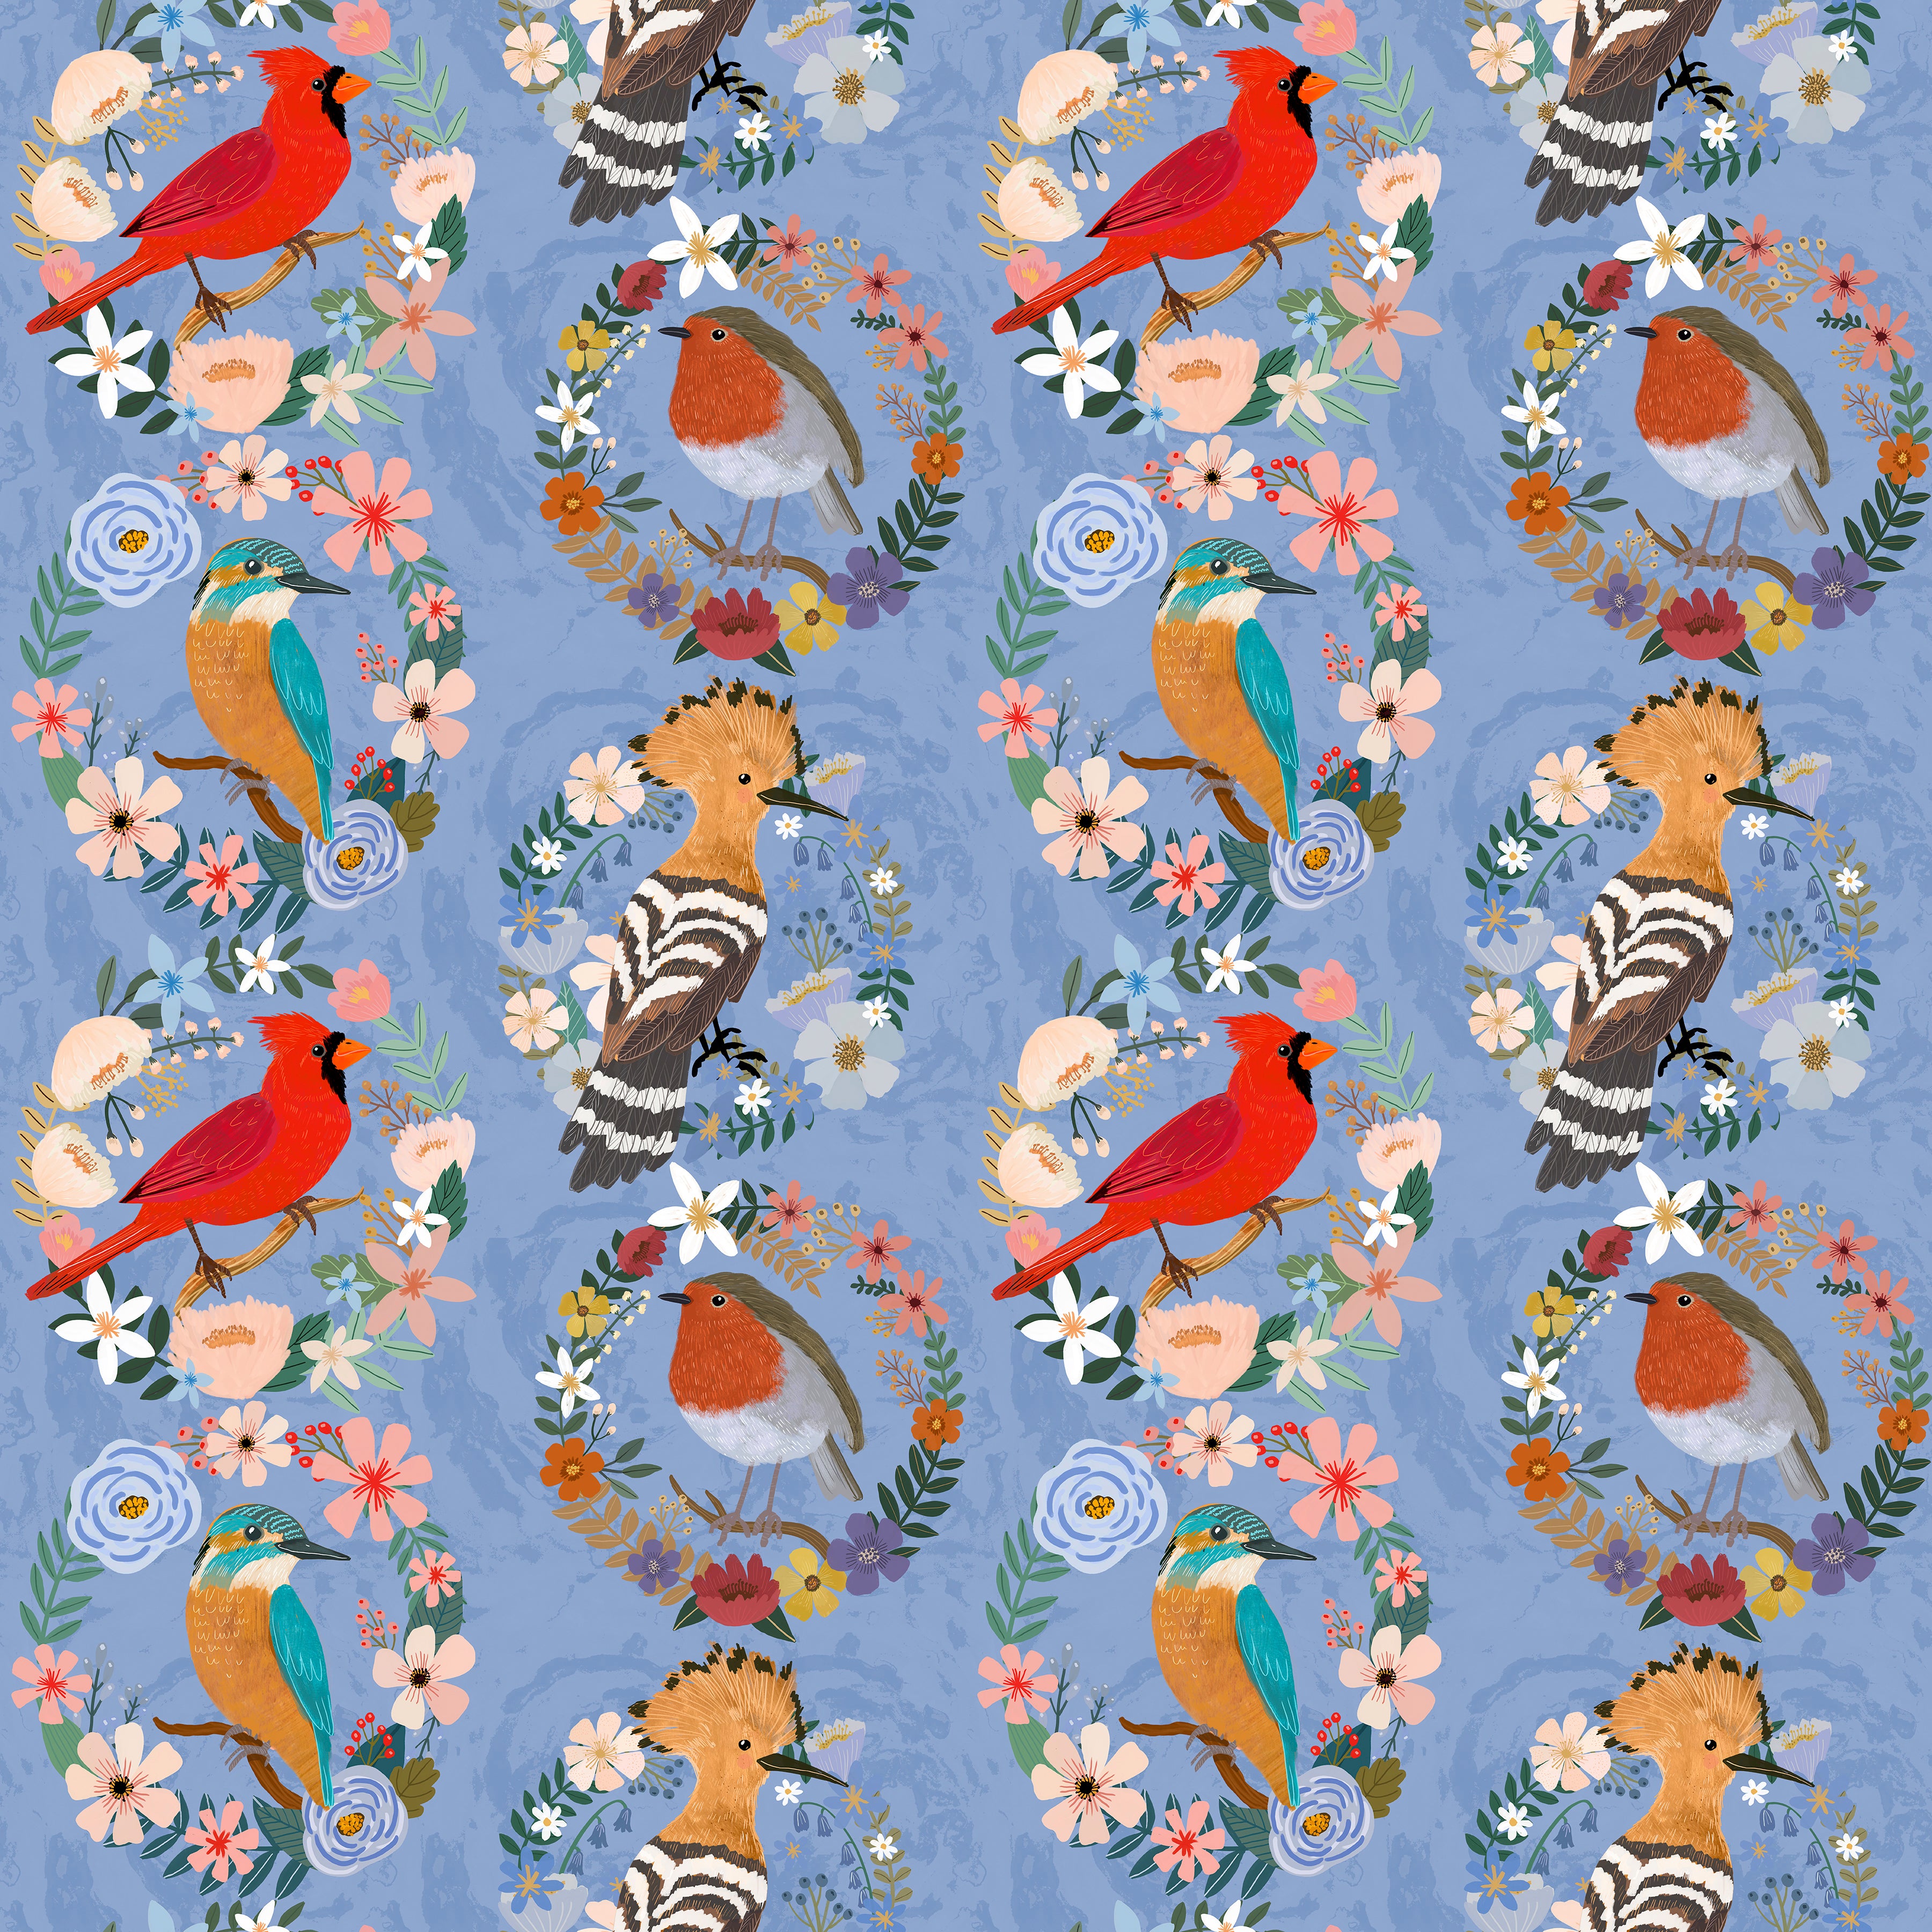 Bird Garden - Bird Wreaths Blue by Mia Charro for Free Spirit